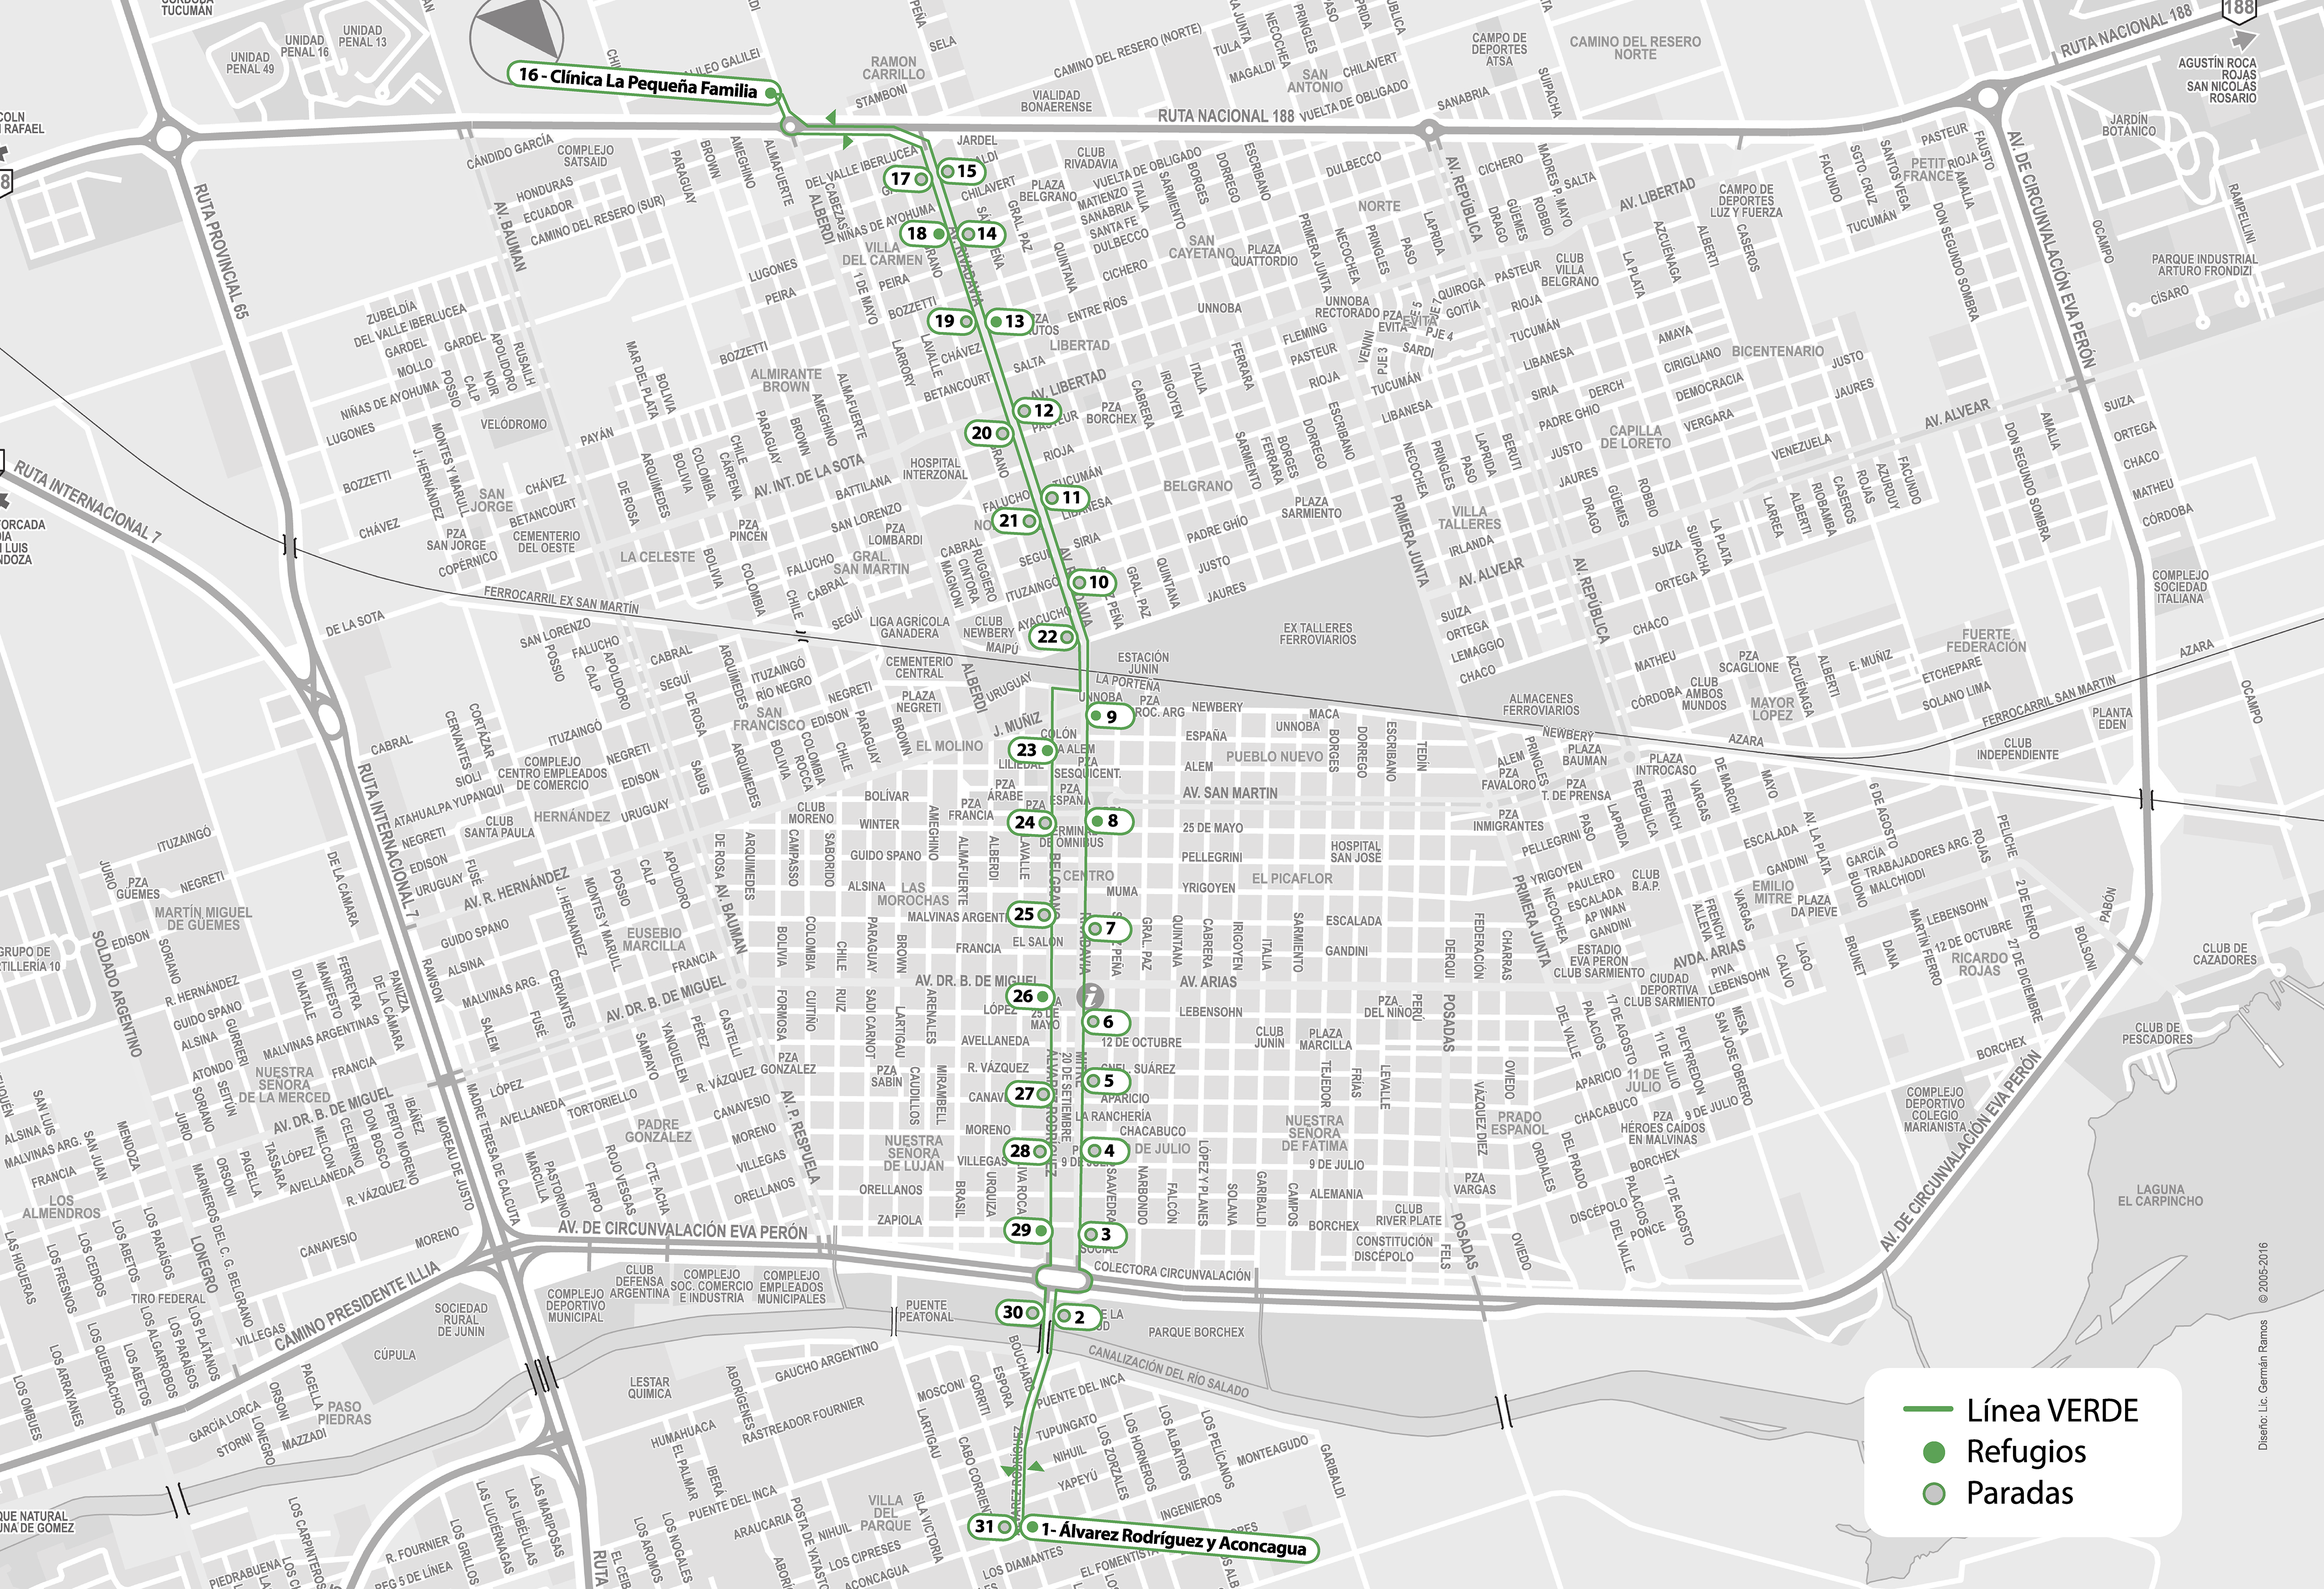 En la imagen se observa el mapa de recorrido de la linea verde